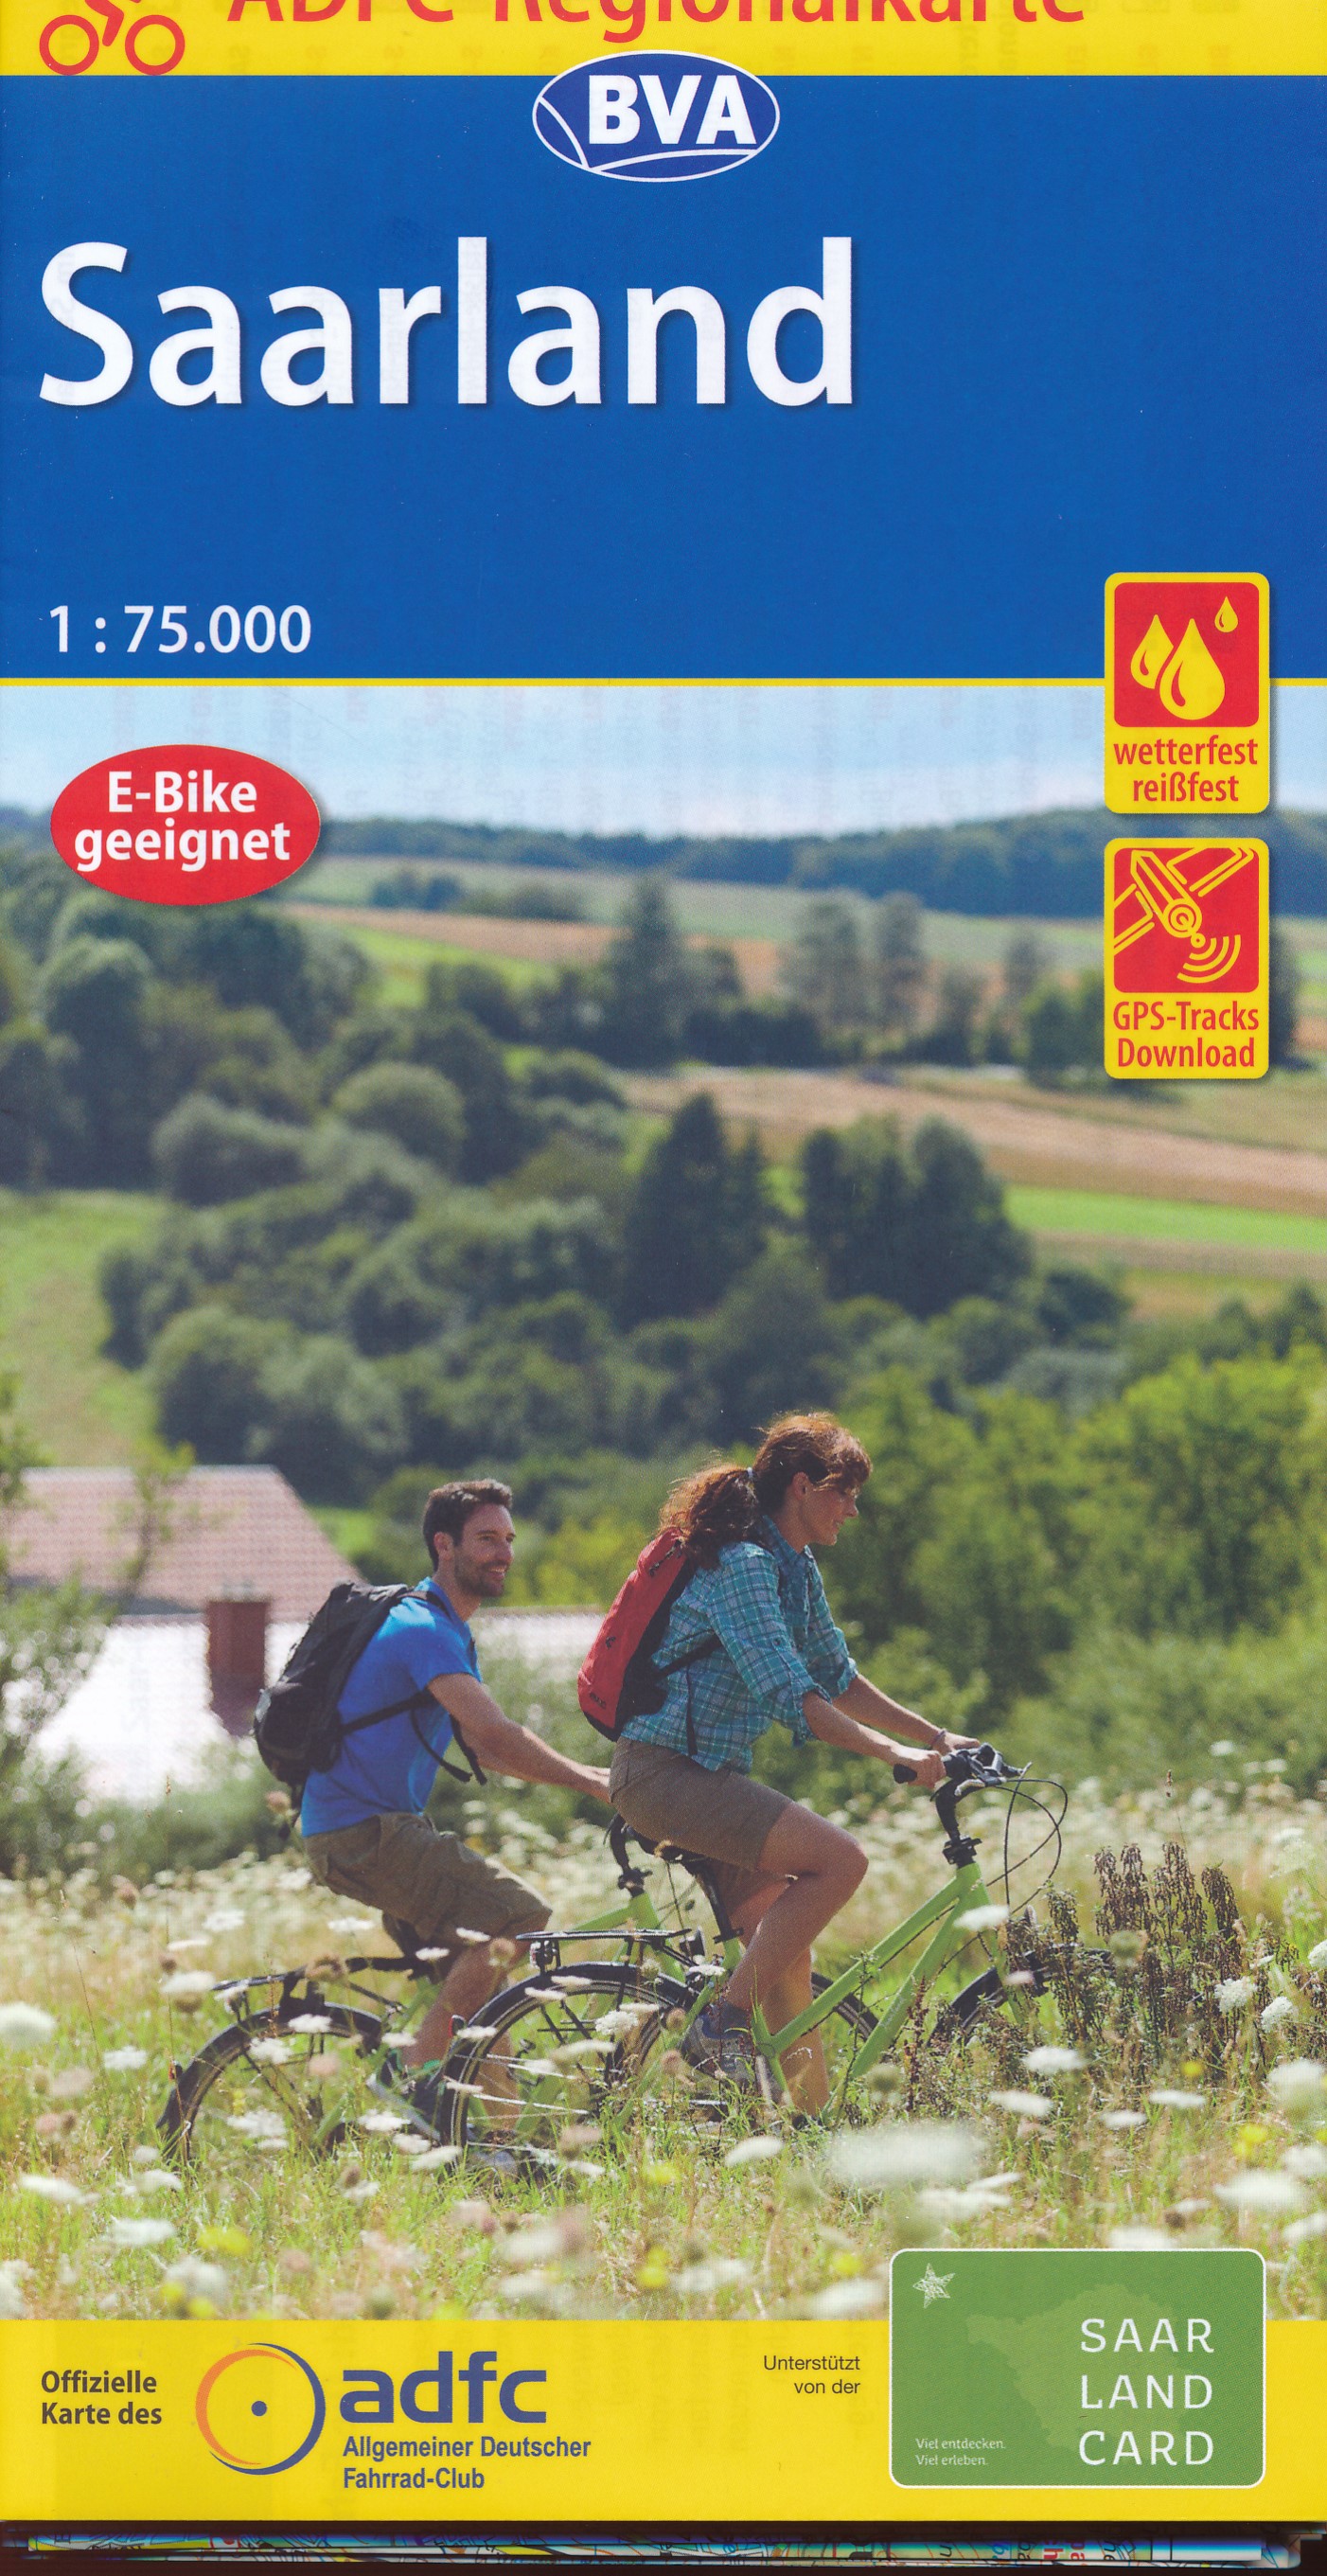 Online bestellen: Fietskaart ADFC Regionalkarte Saarland | BVA BikeMedia